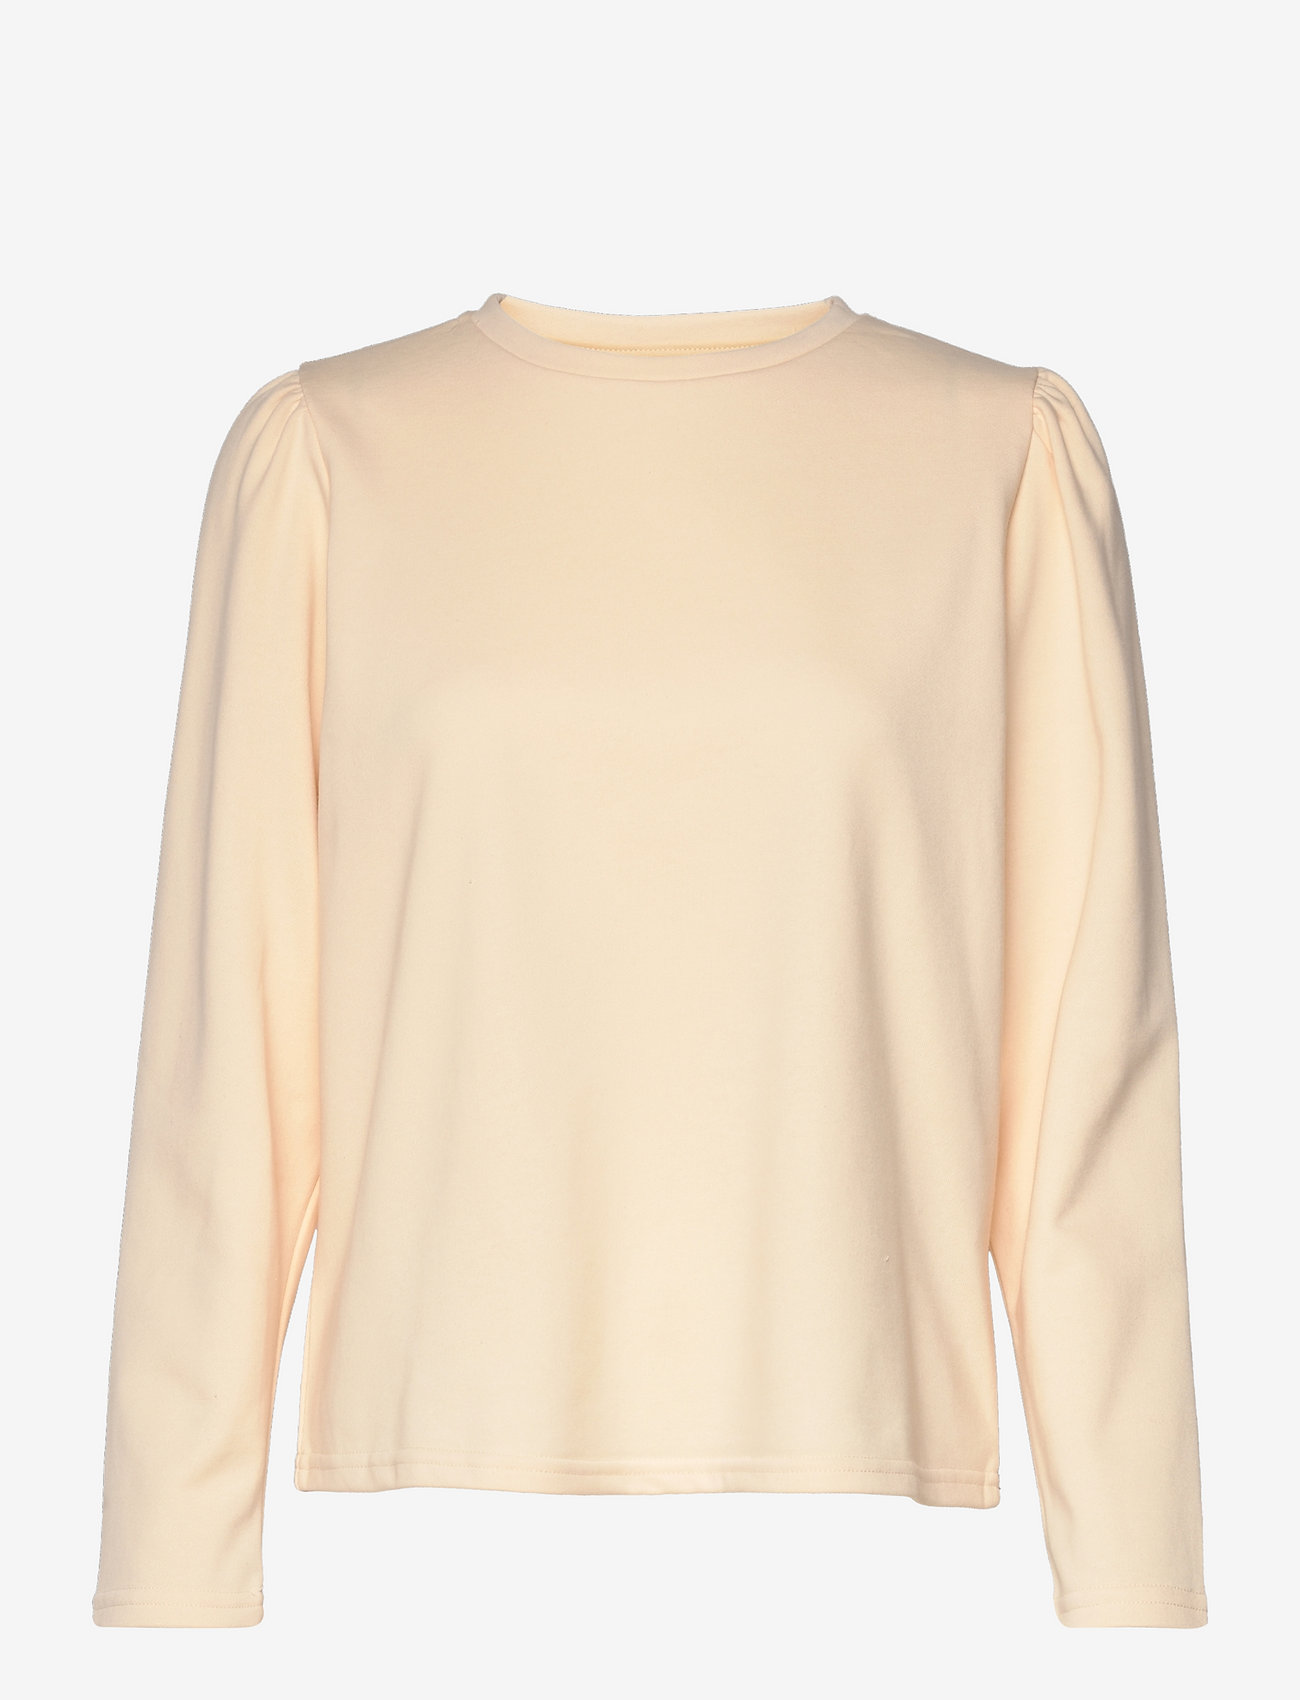 Noella - Flow Sweatshirt Cotton - pitkähihaiset t-paidat - yellow - 0